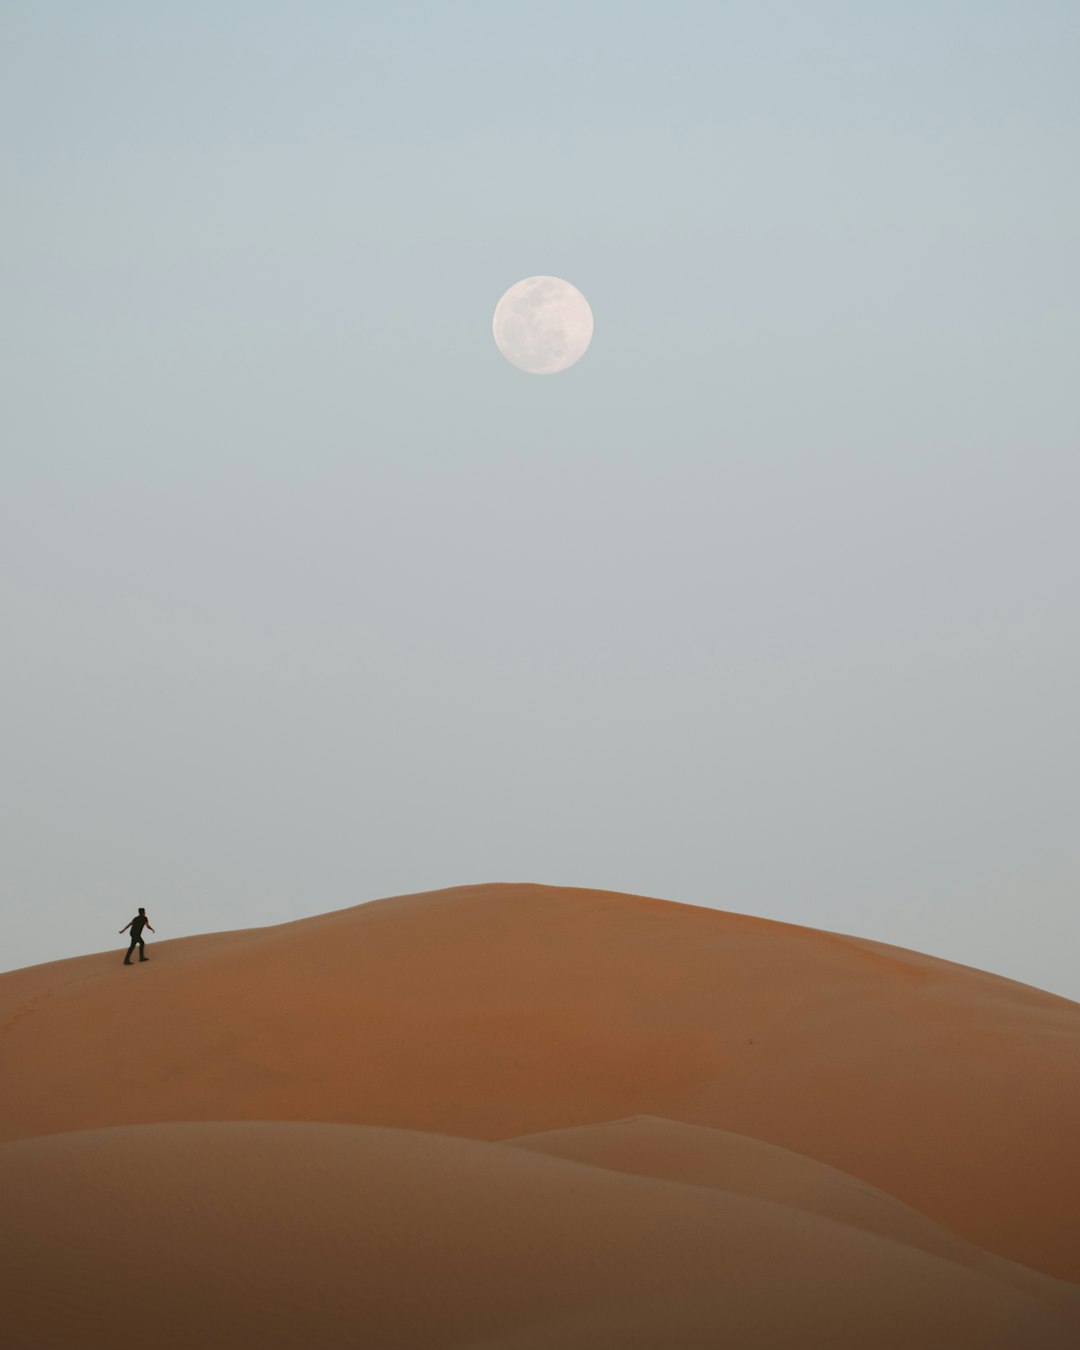 Desert photo spot Abu Dhabi Shahamah - Abu Dhabi - United Arab Emirates